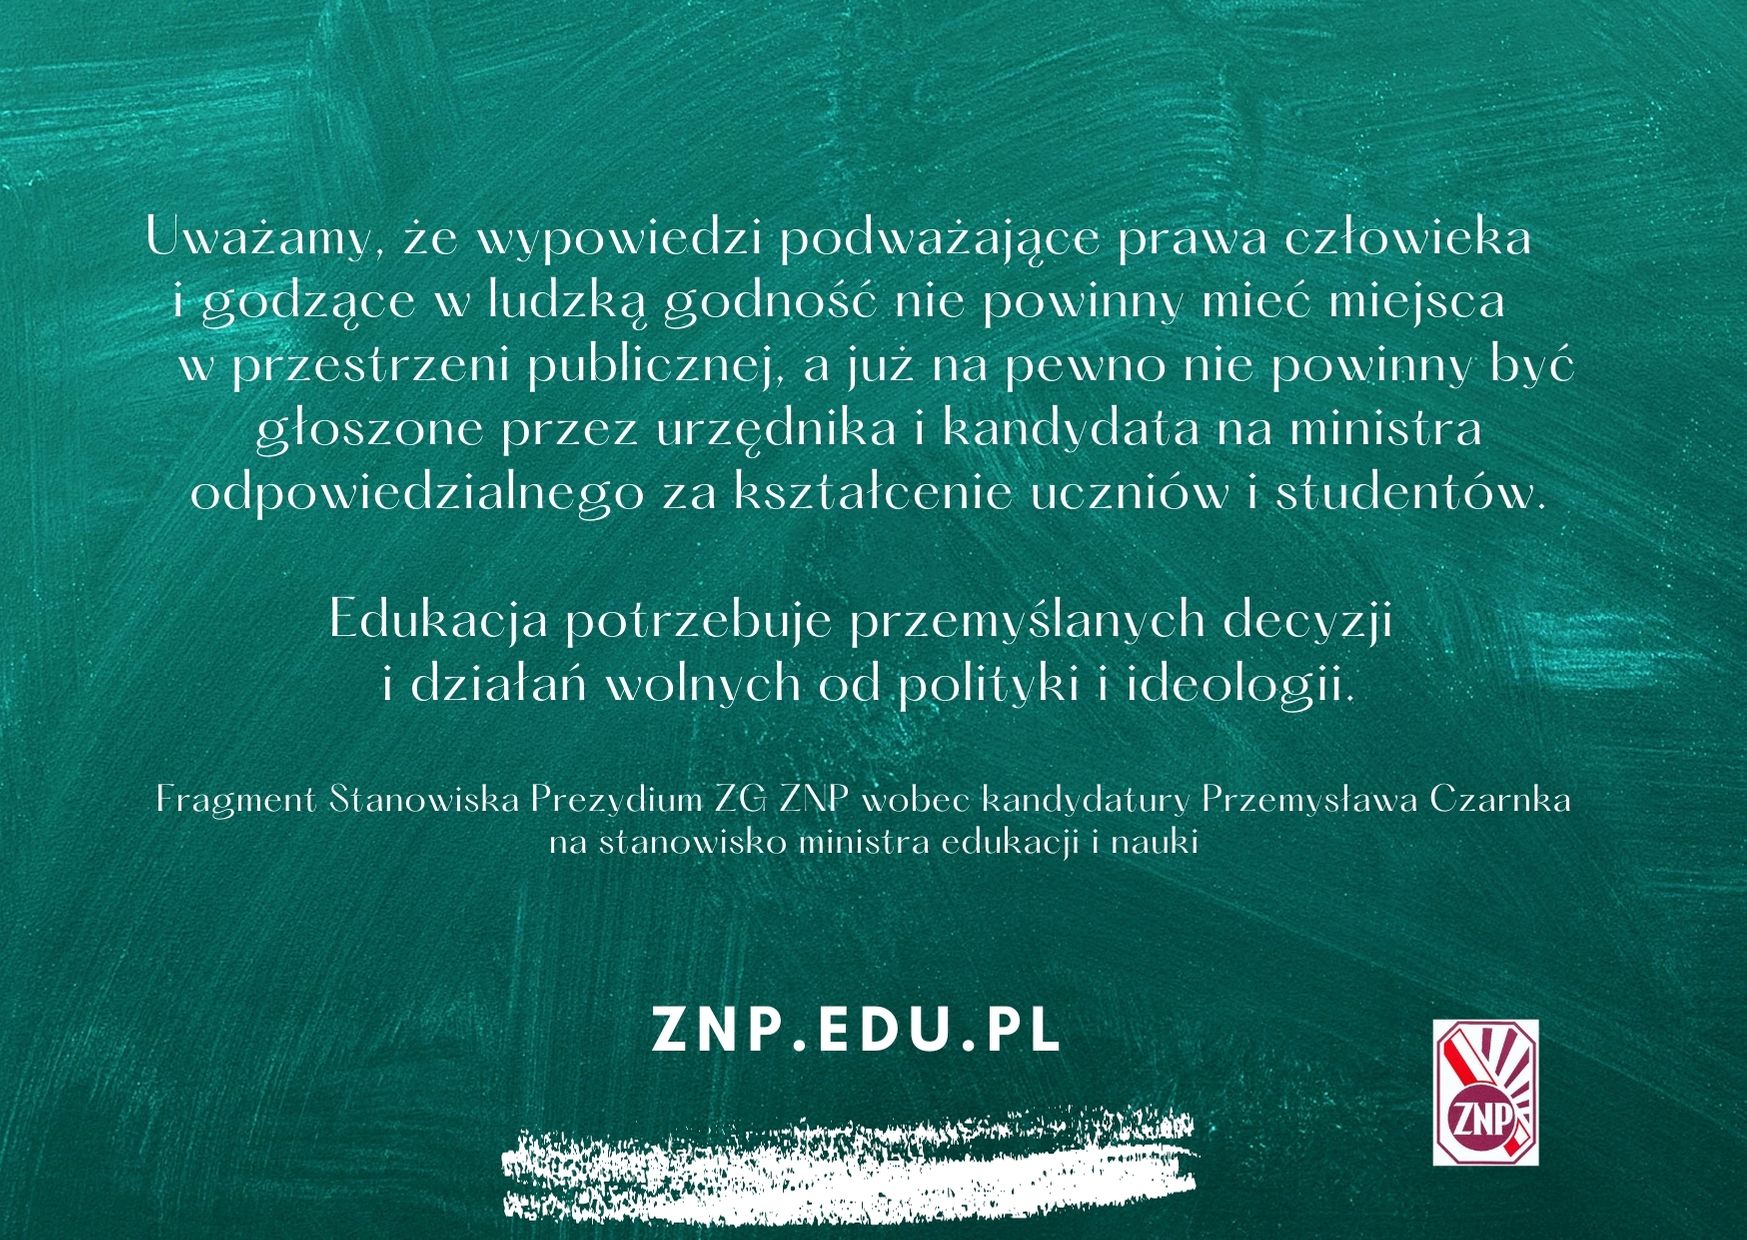 Stanowisko Prezydium ZG ZNP wobec kandydatury Przemysława Czarnka